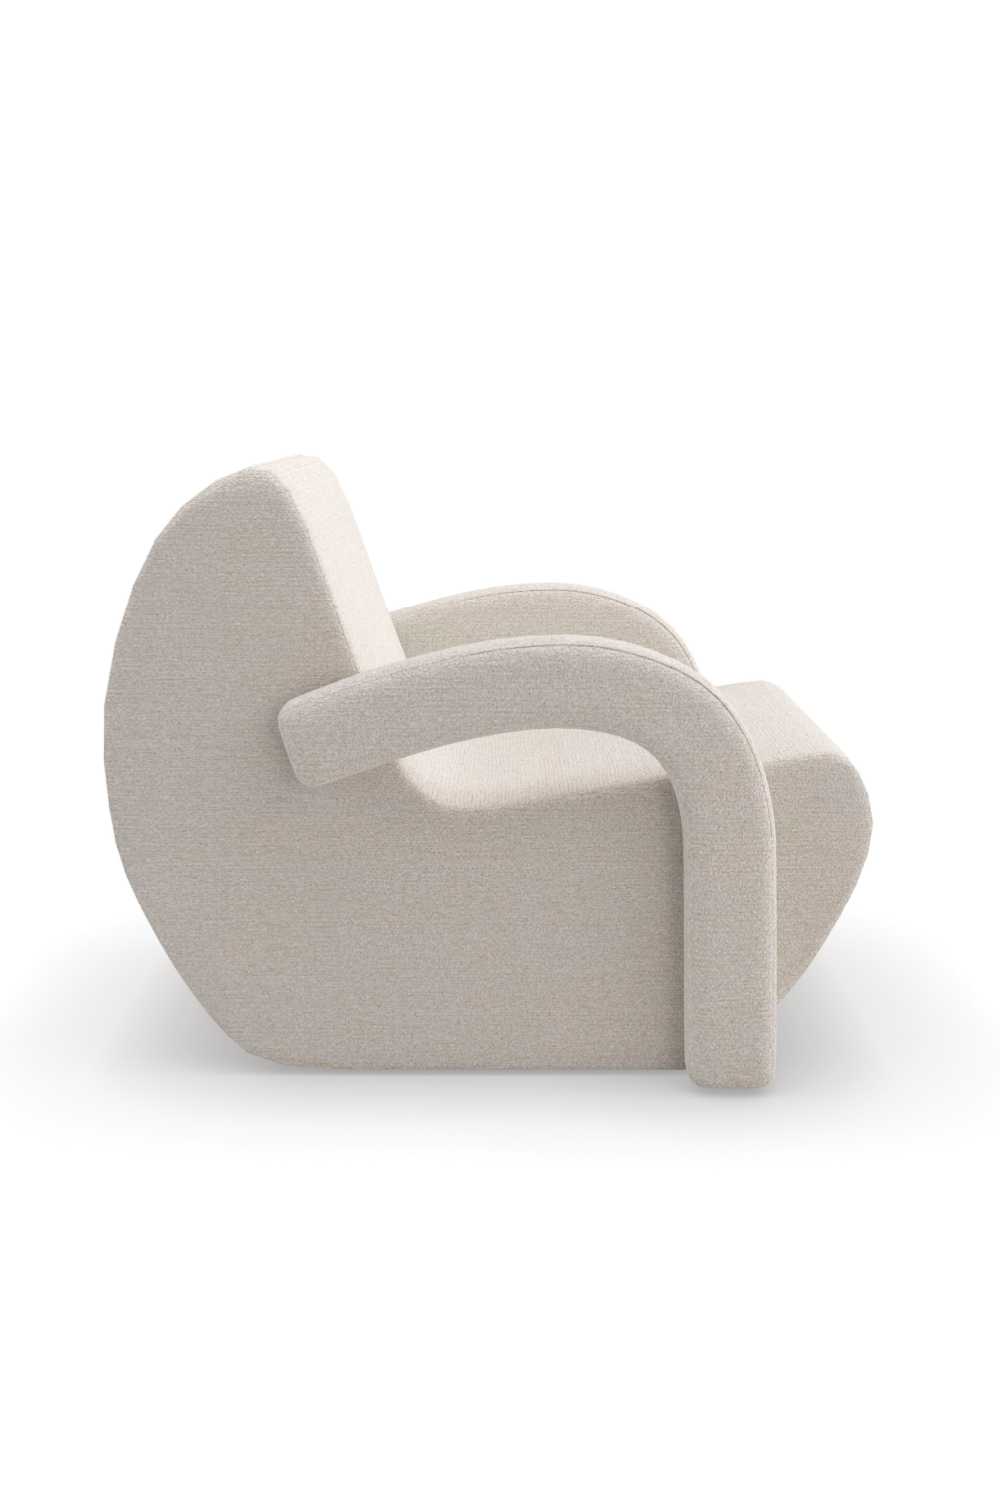 White Bouclé Accent Chair | Caracole Leo | Oroa.com